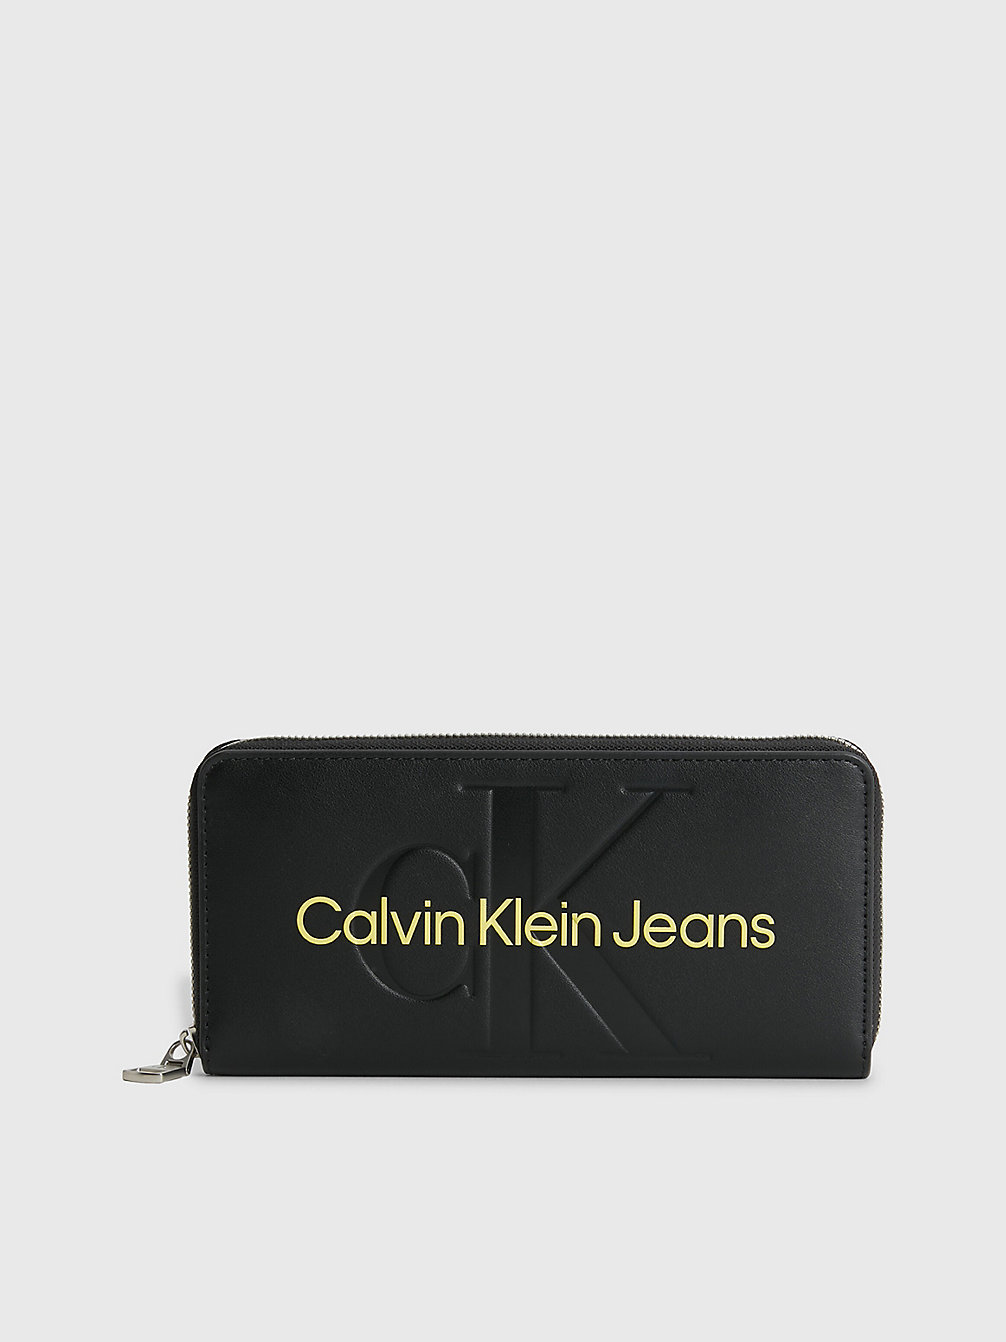 FASHION BLACK Portafoglio Con Zip Integrale E Logo undefined donna Calvin Klein